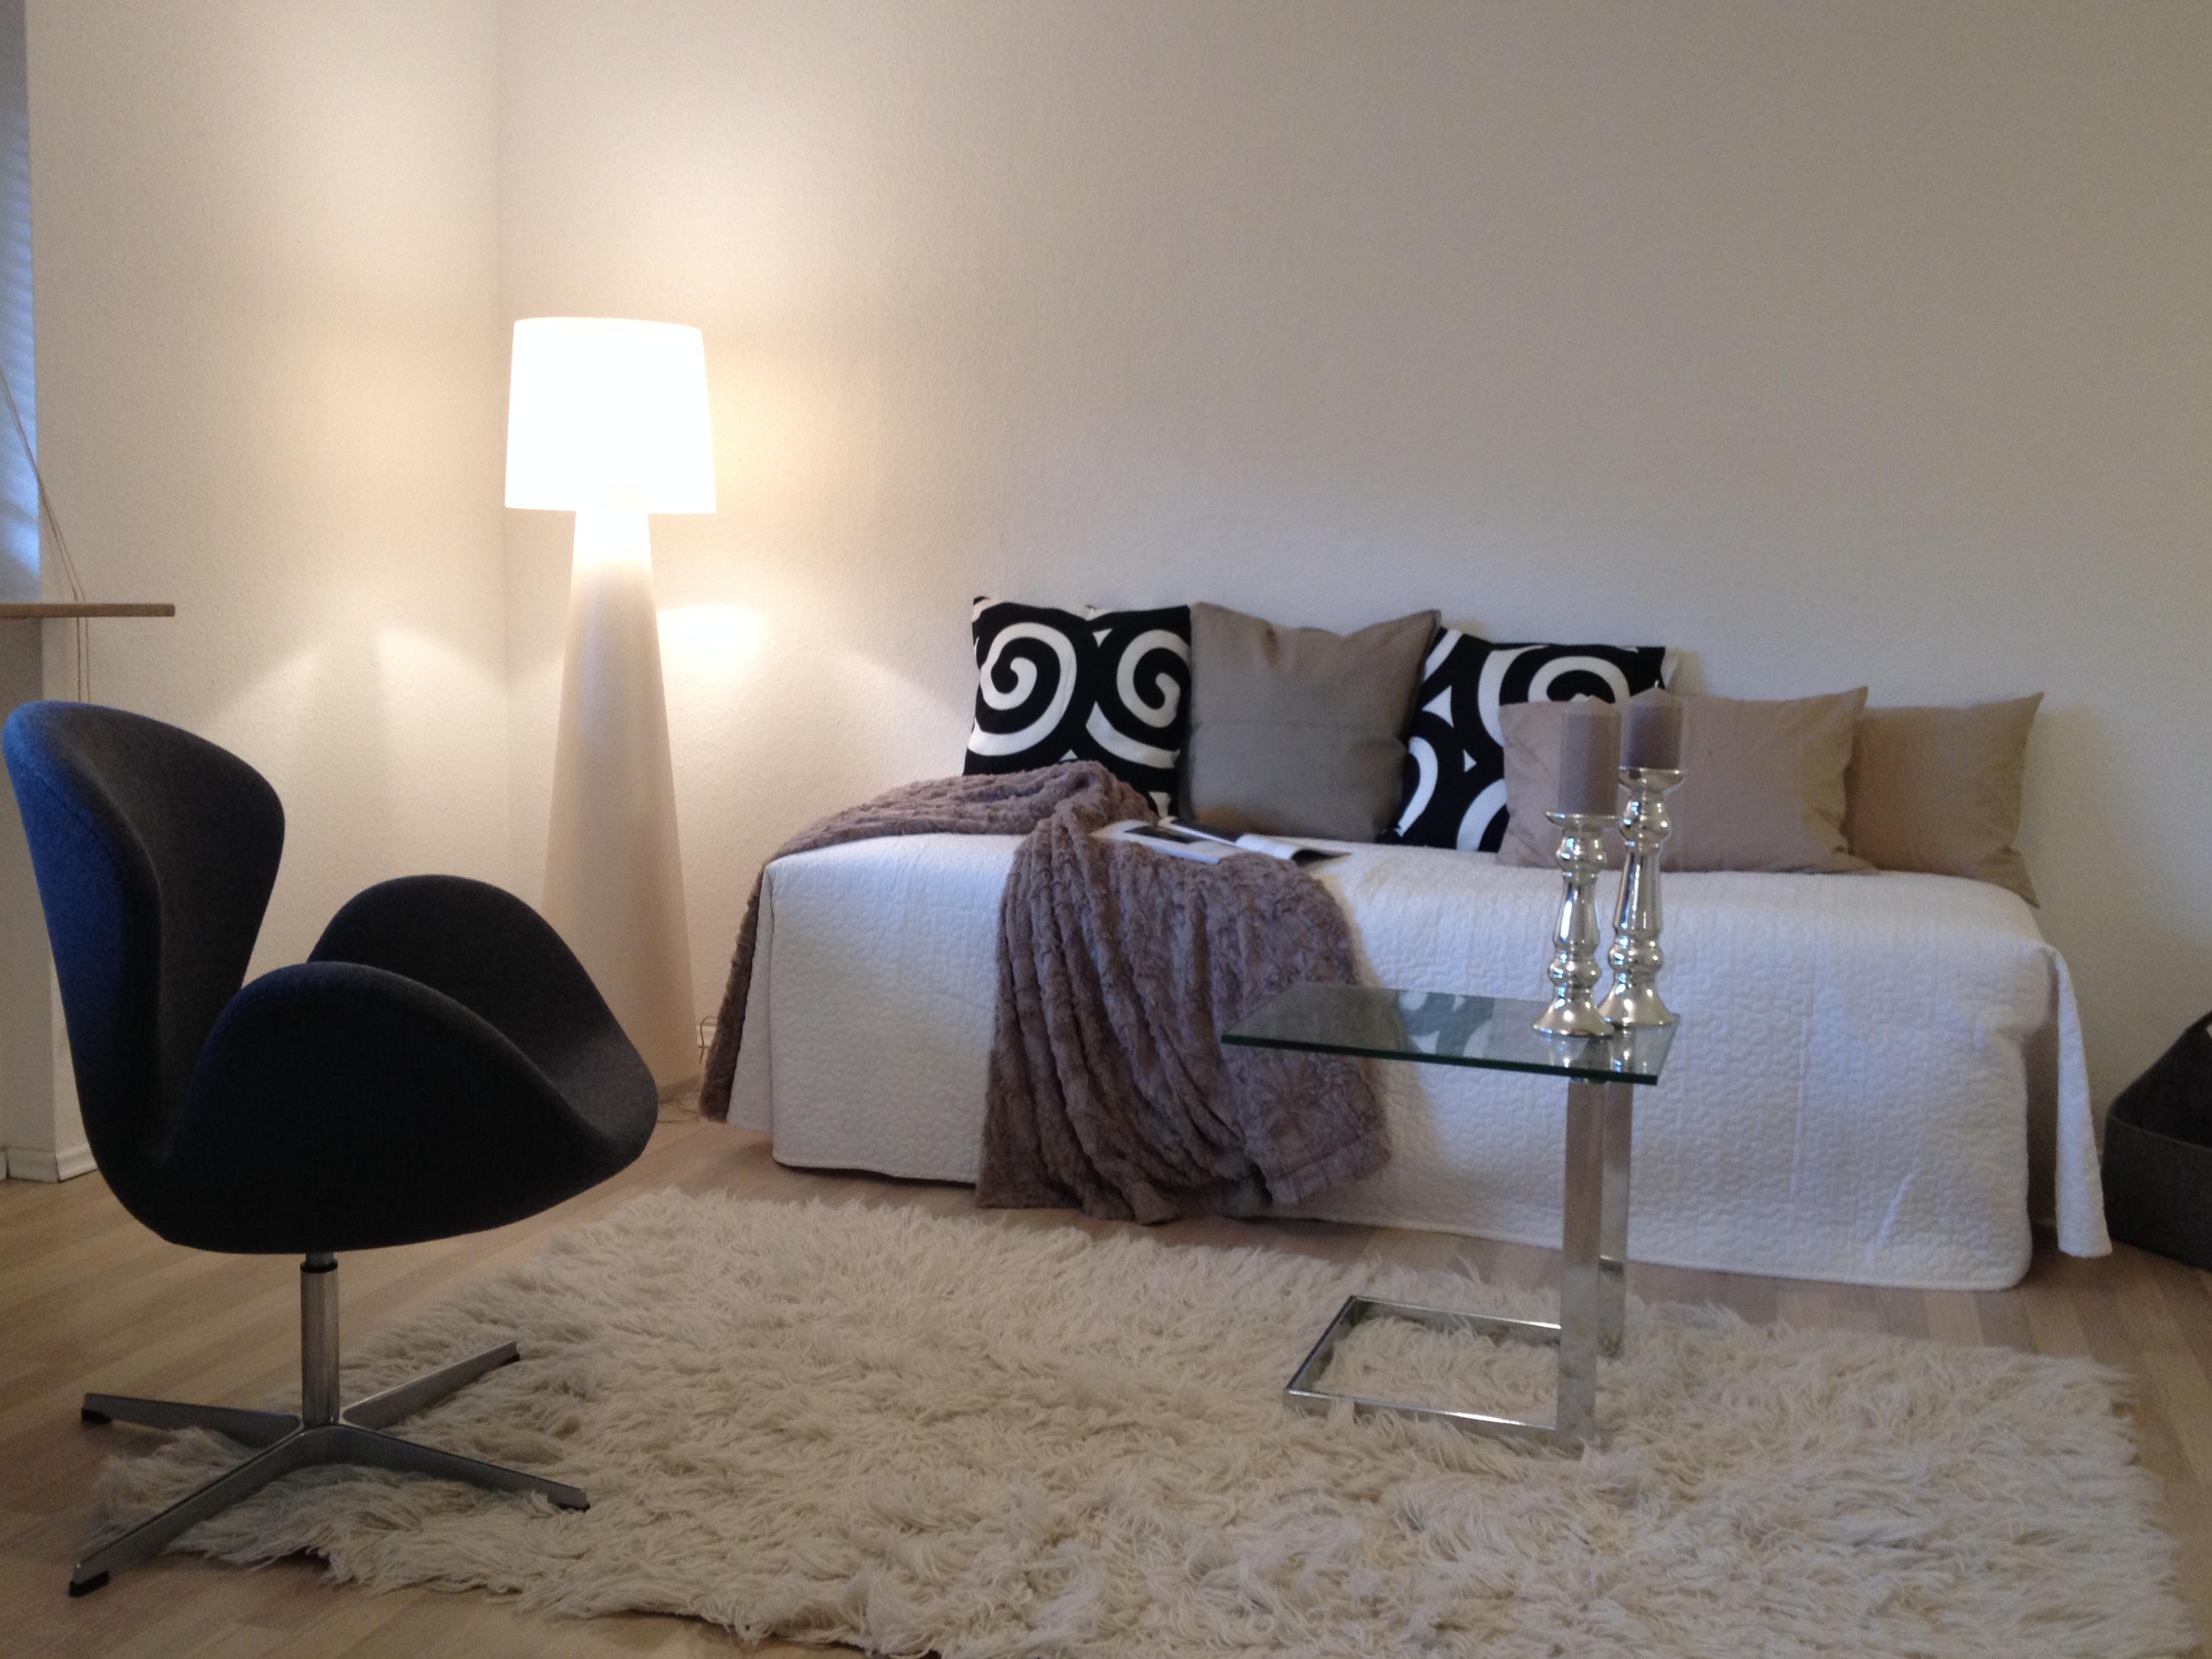 Wohnzimmer nachher #couchtisch #sessel #stehlampe #sofakissen #sofa #glascouchtisch #beigewandfarbe #beigefarbenessofakissen ©woeppel